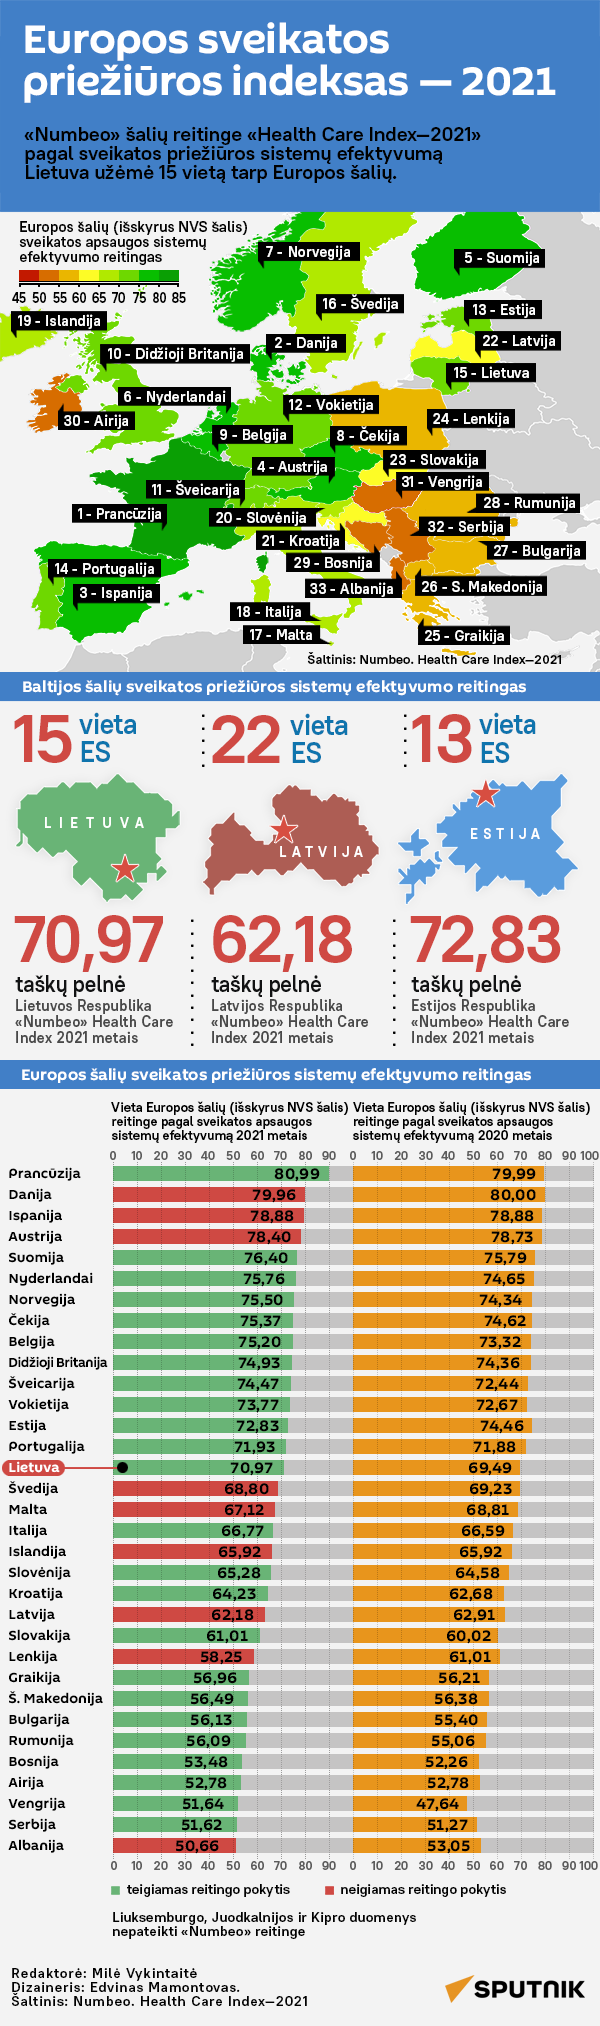 Europos sveikatos priežiūros indeksas — 2021 - Sputnik Lietuva